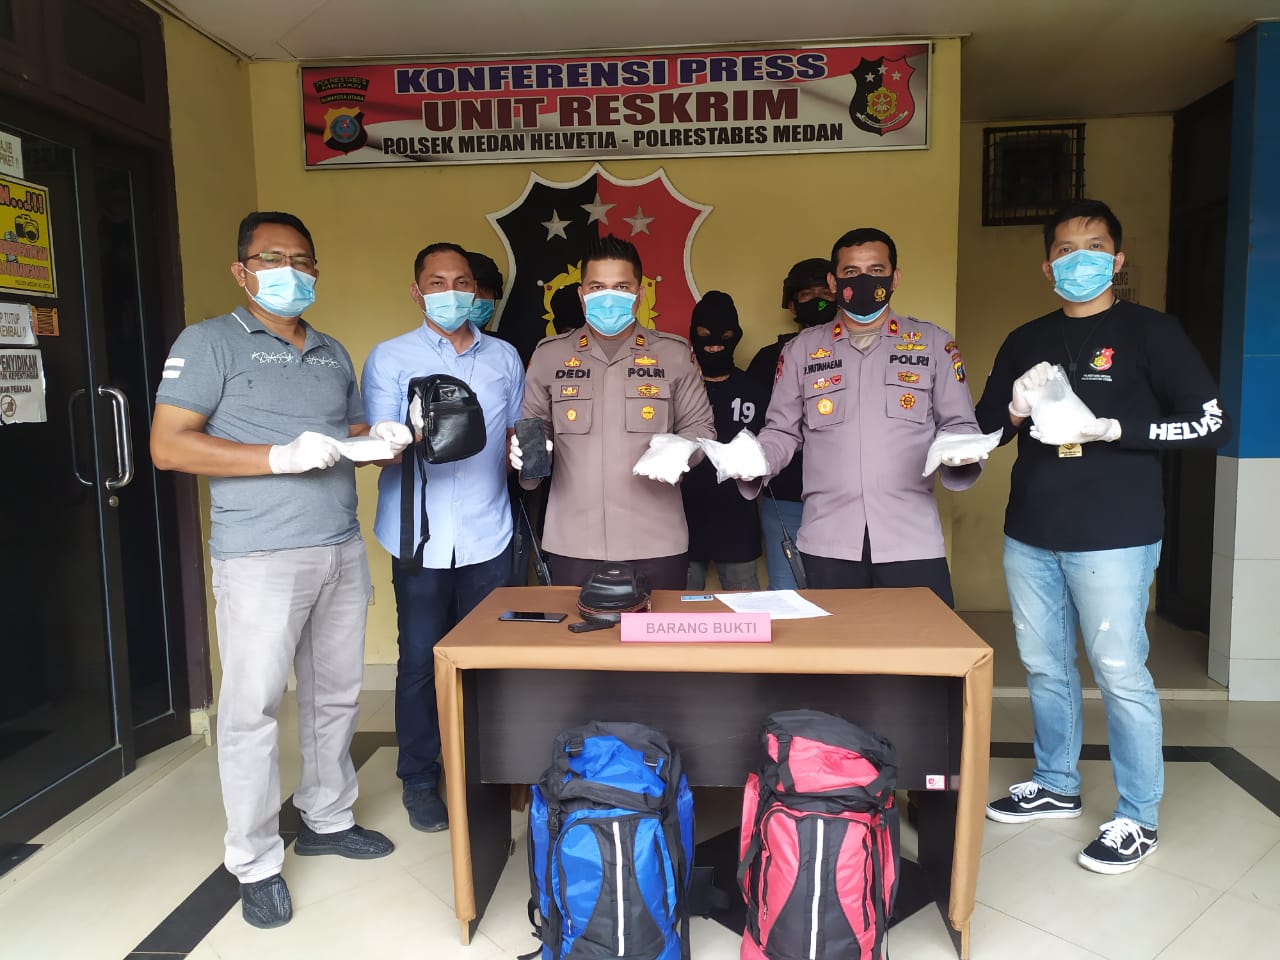 Kapolsek Medan Helvetia bersama Anggotanya Ungkap 1 Kg Sabu Di Jalan Ngumban Surbakti